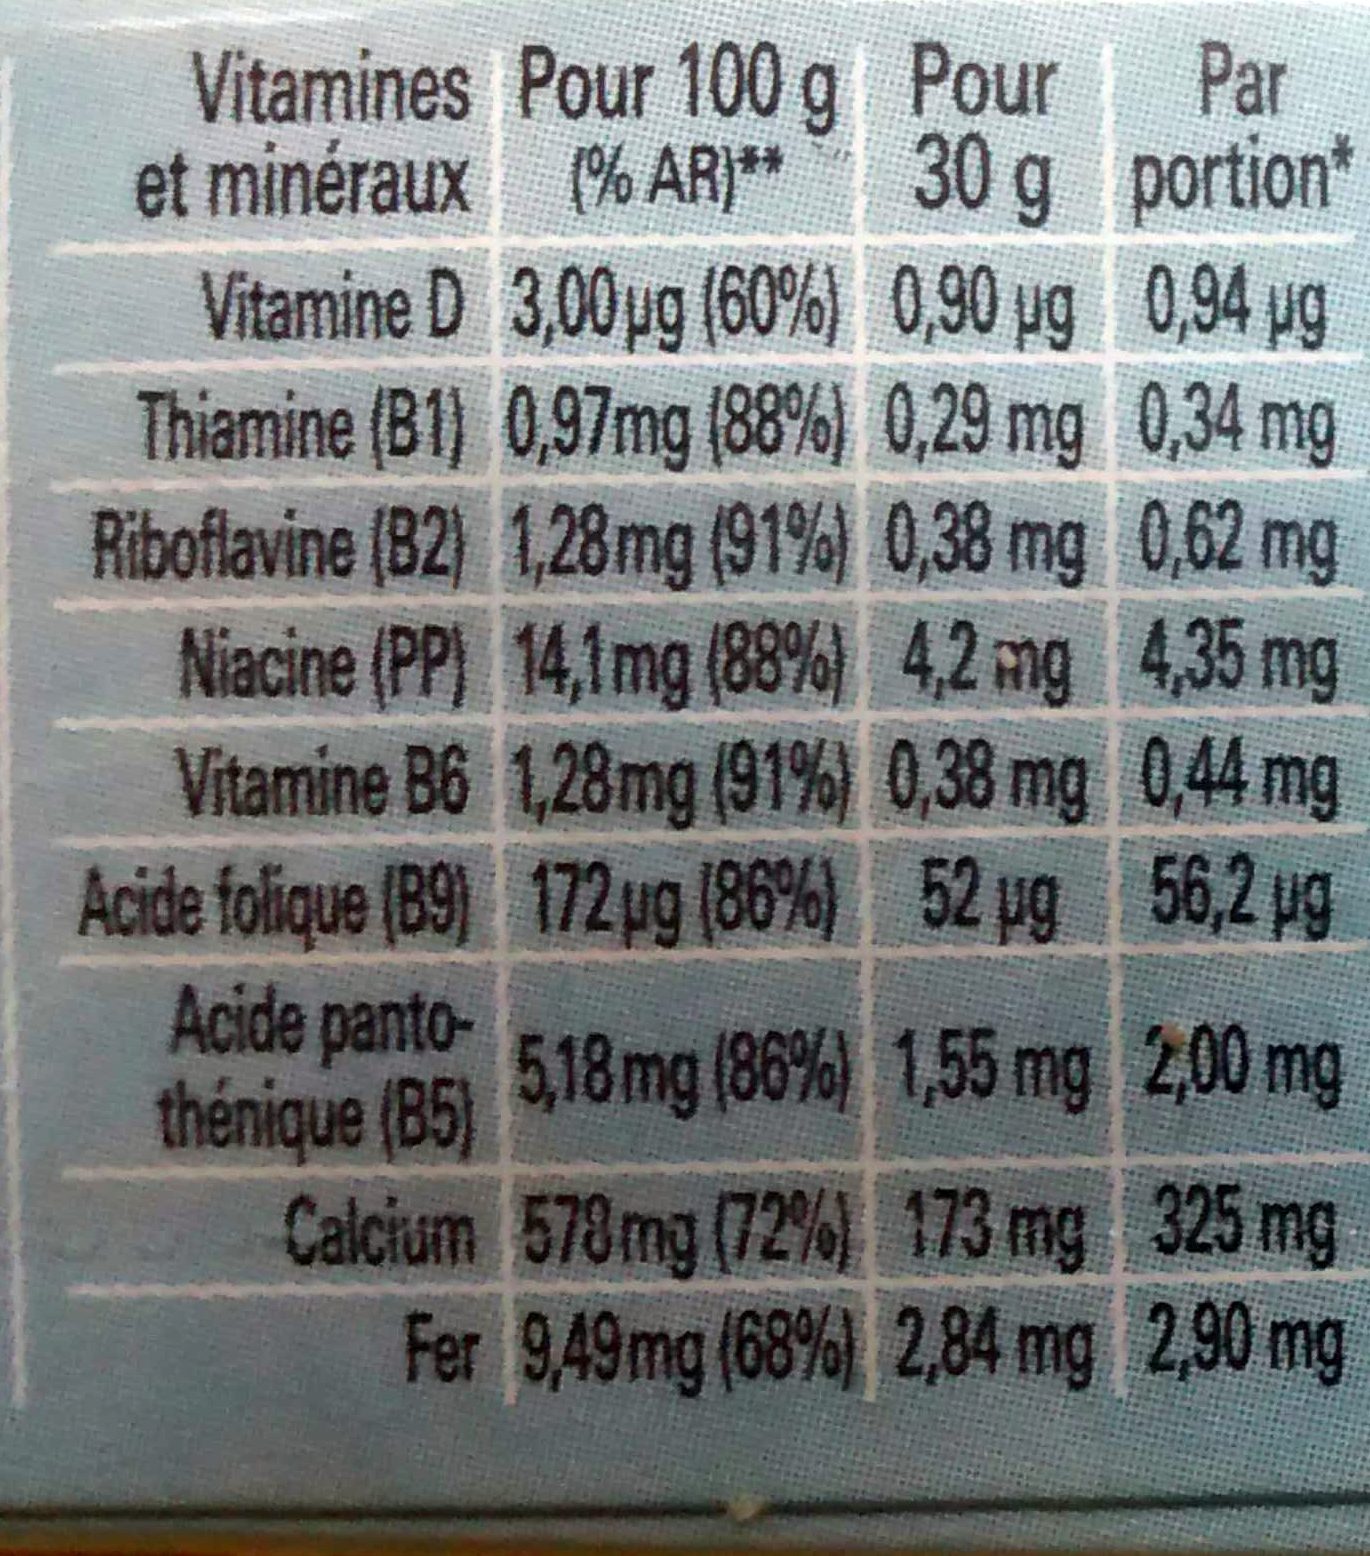 NESTLE MIX Céréales 190g - Nutrition facts - fr